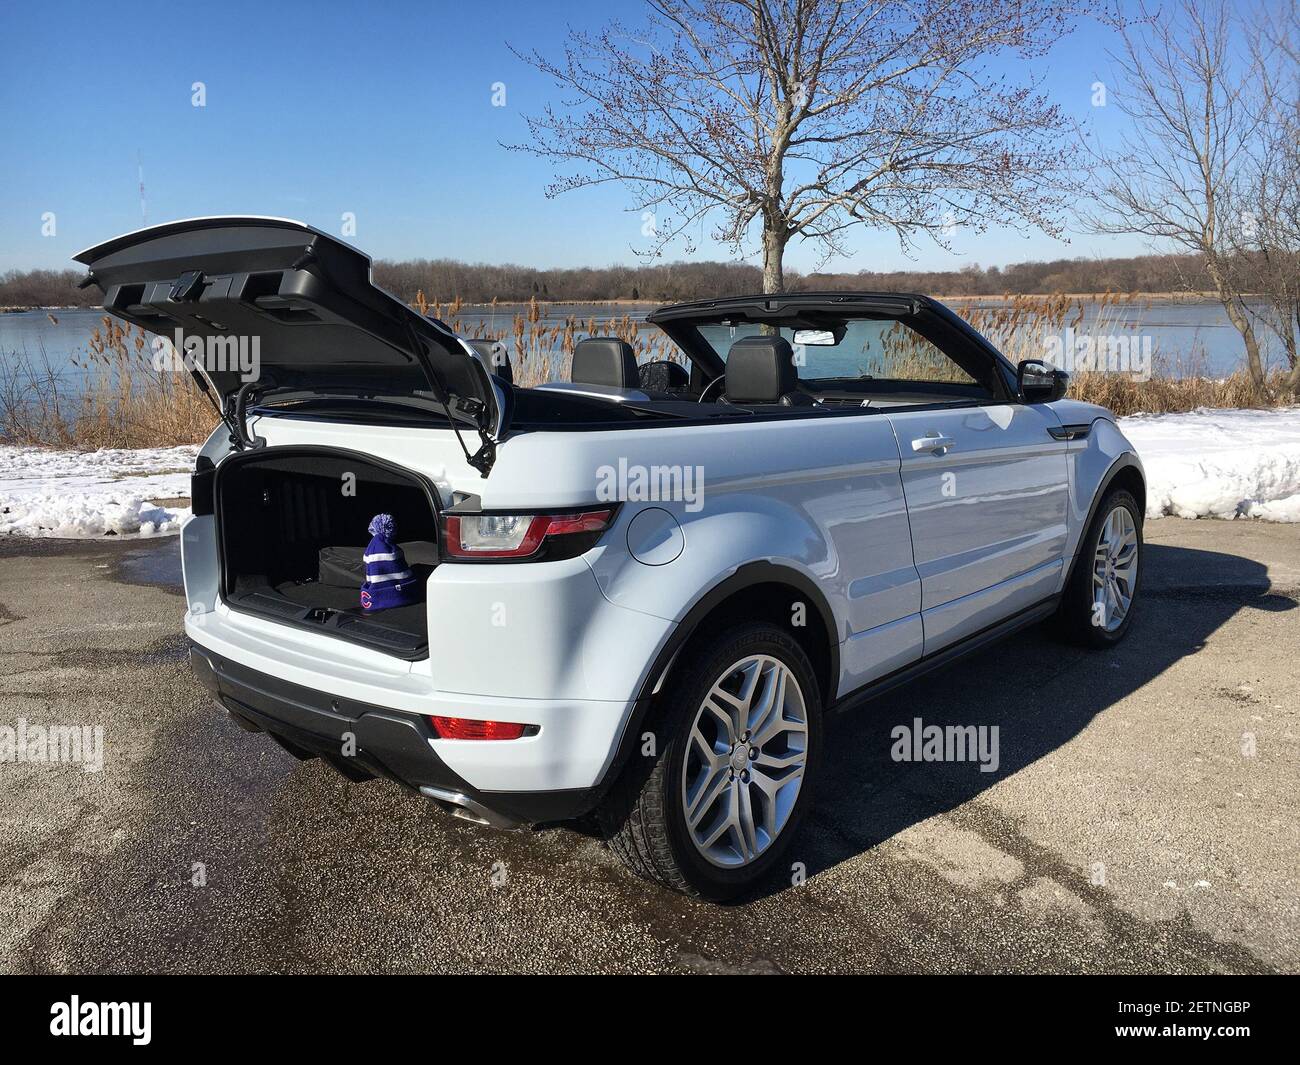 Le Range Rover Evoque Cabriolet, basé sur le plus petit multisegment Rover,  est un modèle tout-terrain à transmission intégrale qui peut accueillir  quatre personnes et coûte 58,000 $. (Photo de Robert Duffer/Chicago